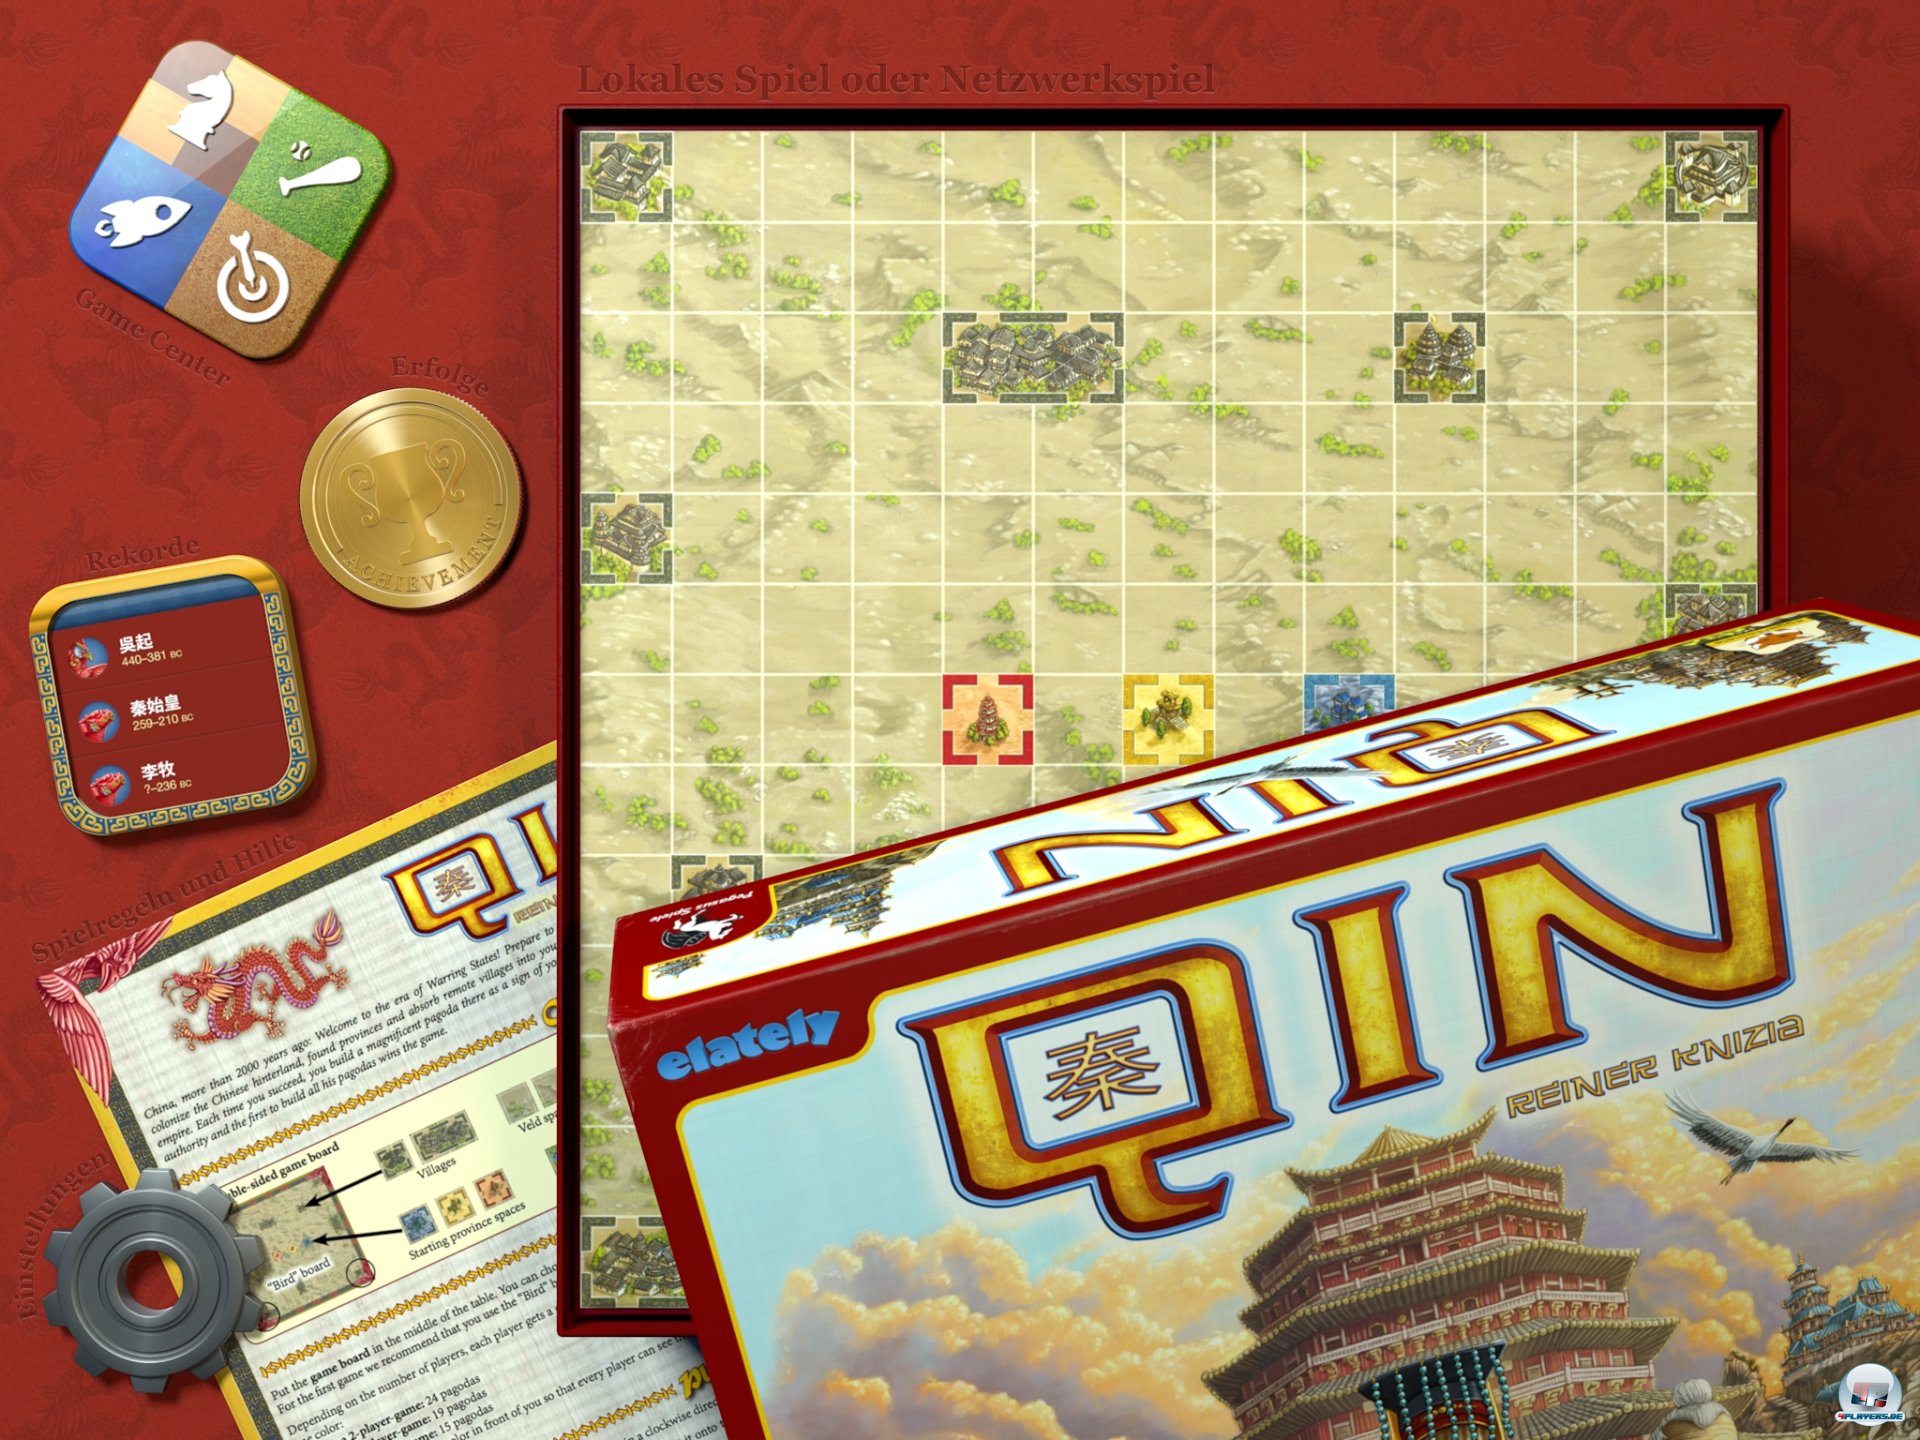 Zeitgleich zum Brettspiel erschien Qin von Reiner Knizia auch als digitales Spiel für iOS.